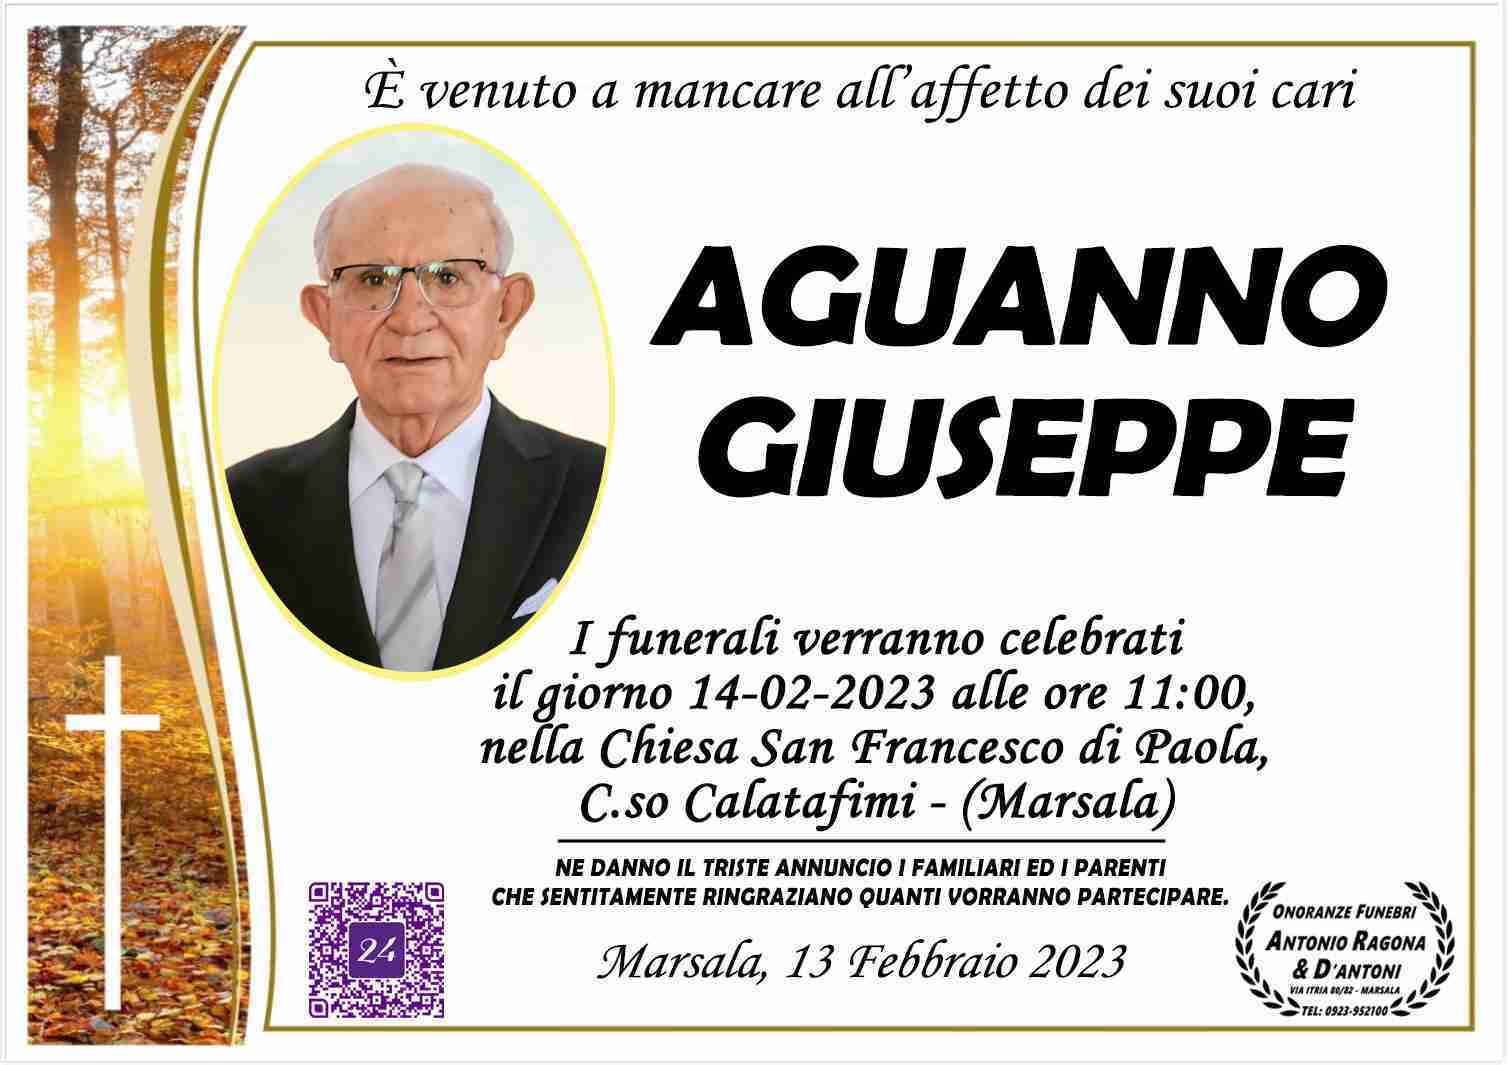 Giuseppe Aguanno